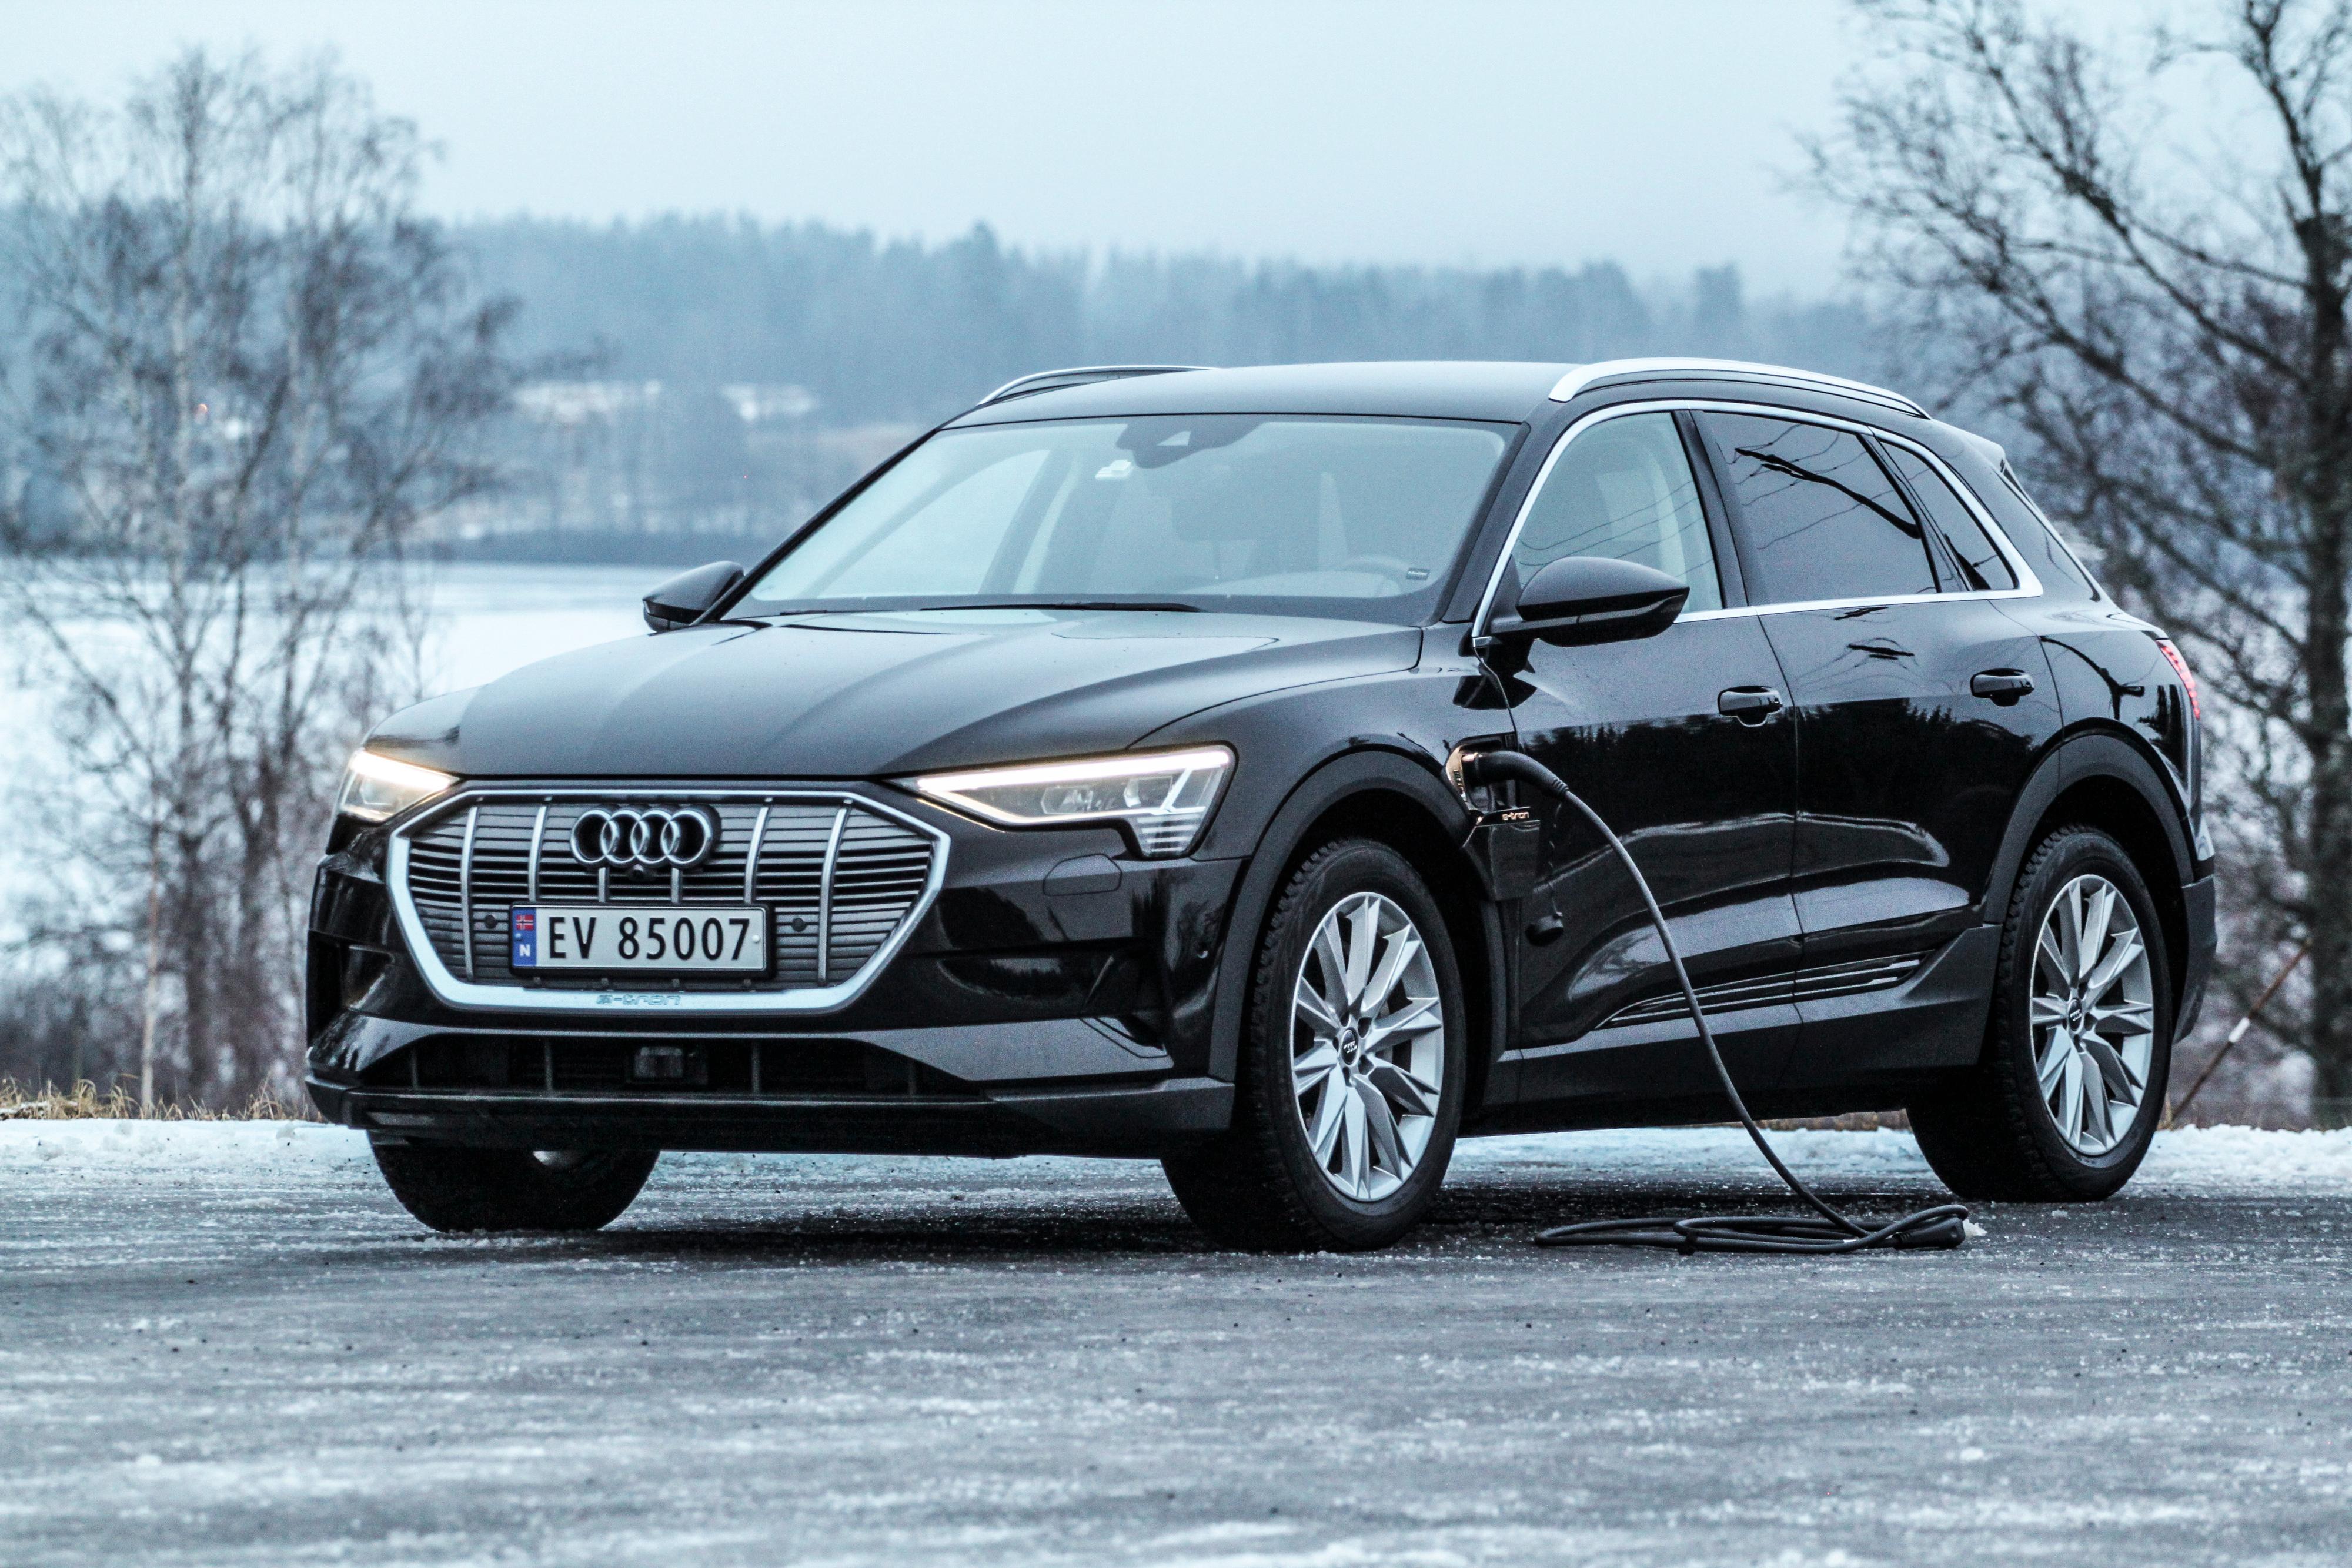 90 prosent av Audis norske leveranser i januar var e-tron. Den var også den mest solgte bilen av alle. 